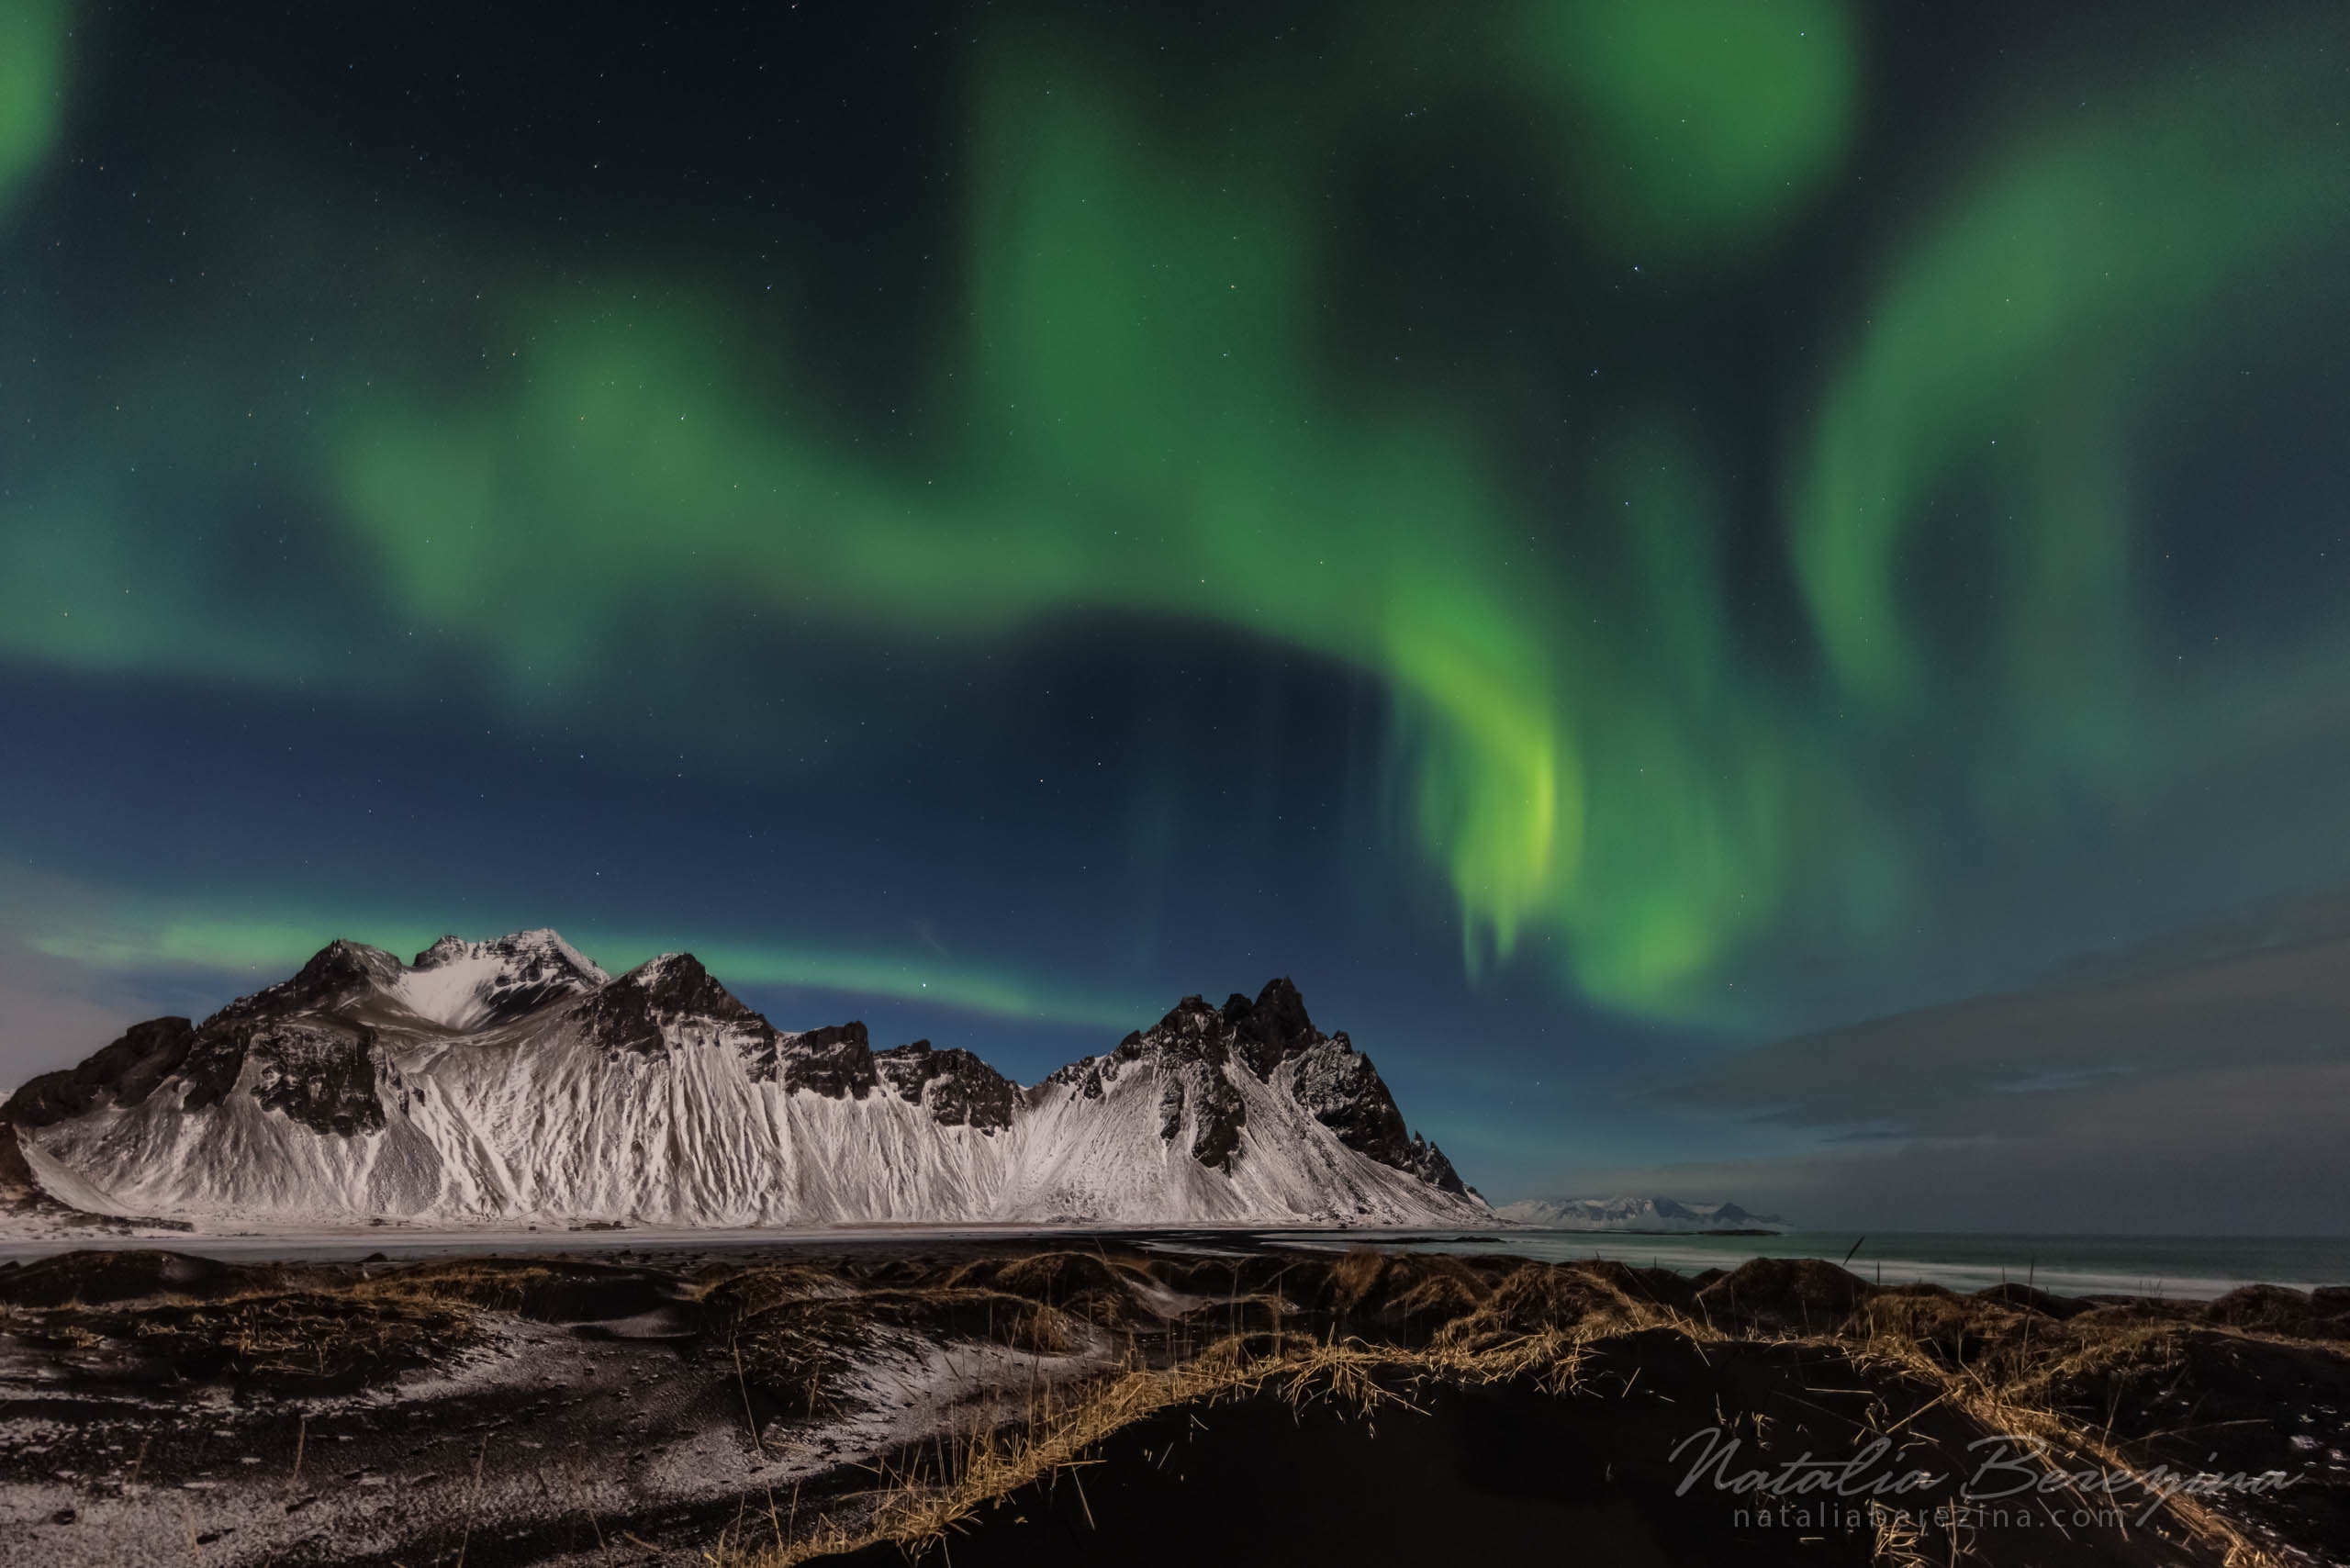 Iceland, landscape, mountains, Aurora, night IC2-NB086A0386 - Iceland - Natalia Berezina Photography